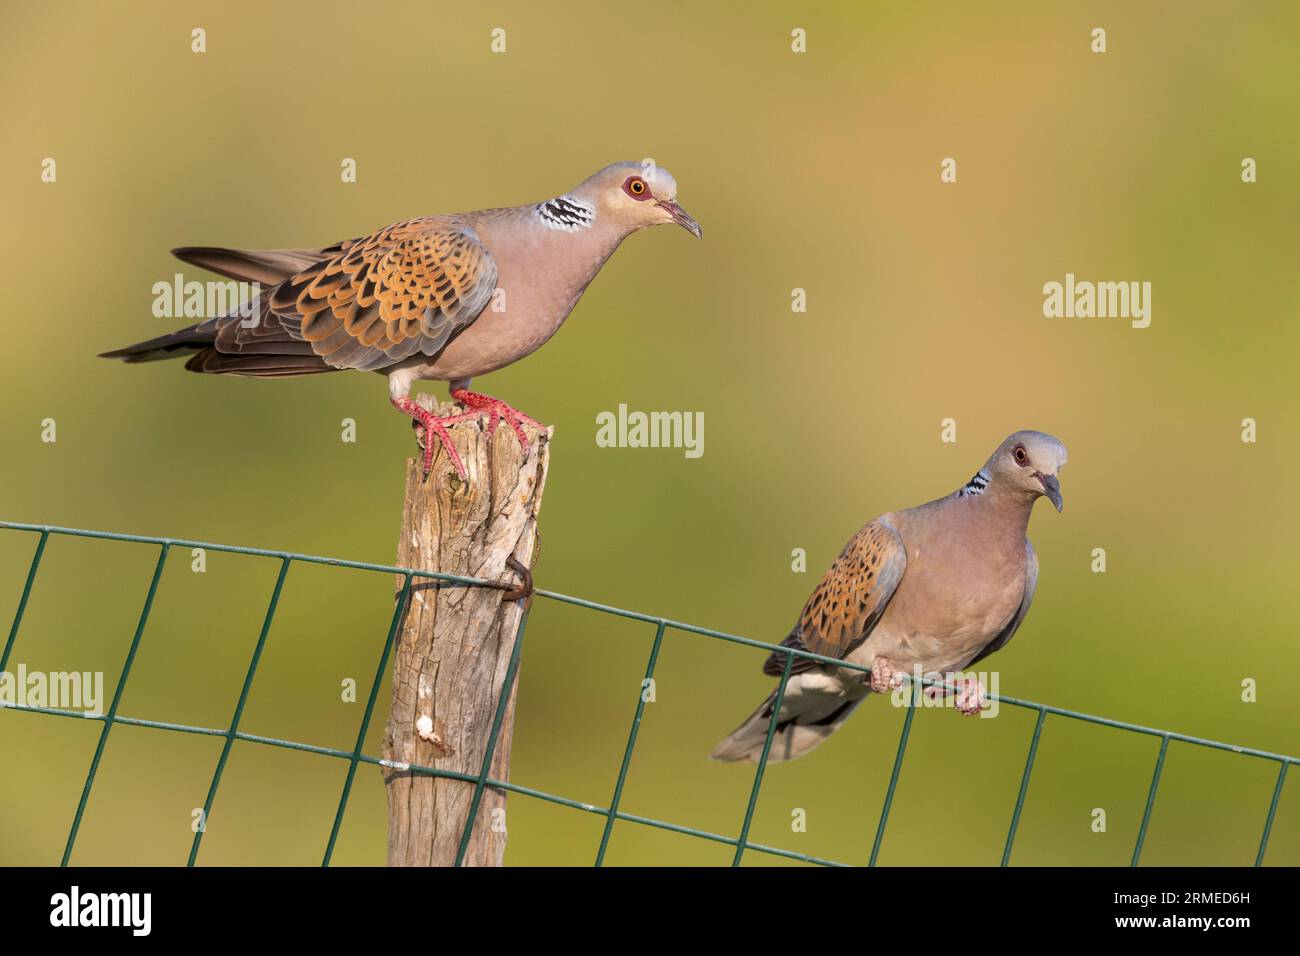 European Turtle Dove (Streptopelia turtur), couple perched on a fence, Campania, Italy Stock Photo